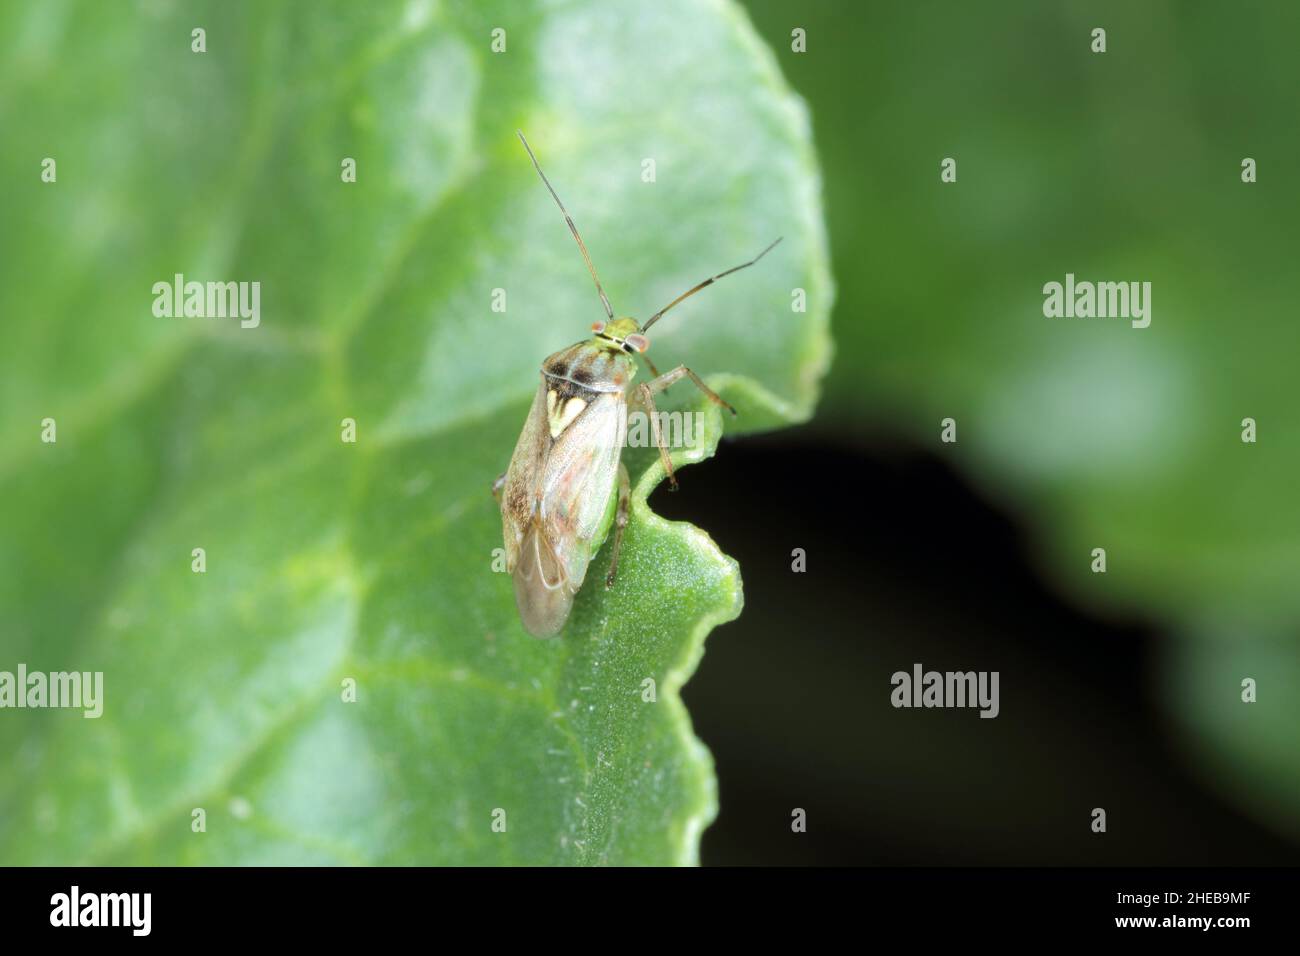 Lygus Bug form the family Miridae on a beet leaf. Stock Photo